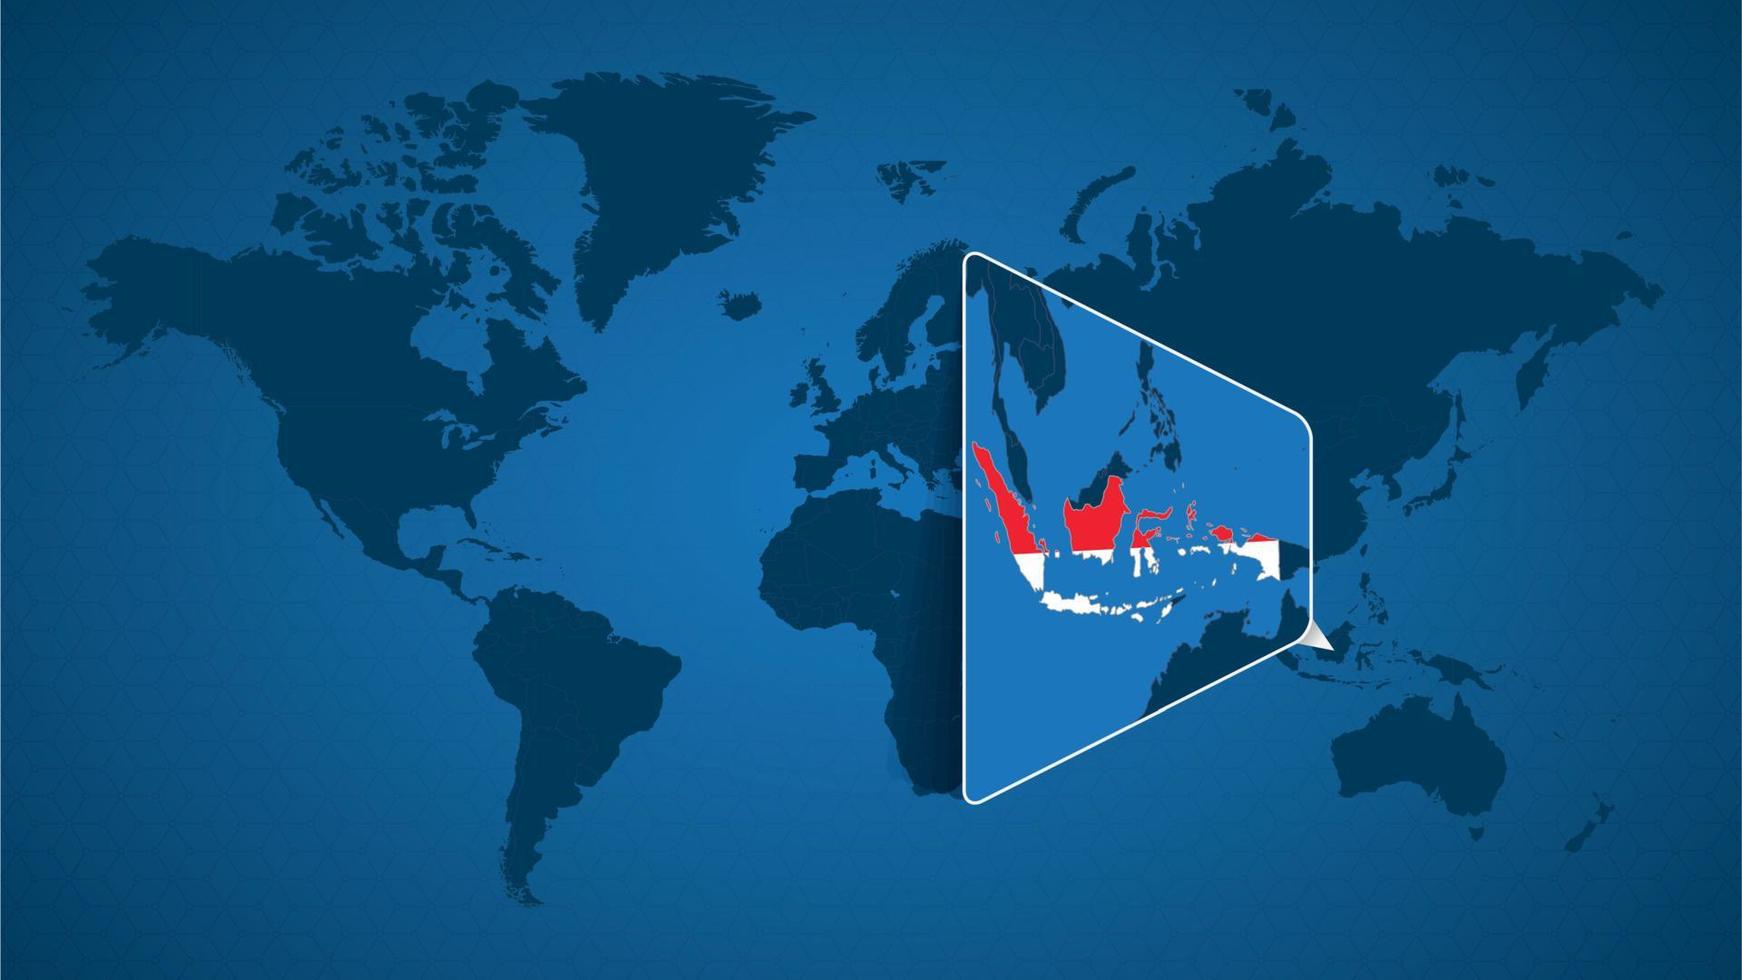 mappa del mondo dettagliata con mappa ingrandita appuntata dell'Indonesia e dei paesi vicini. vettore